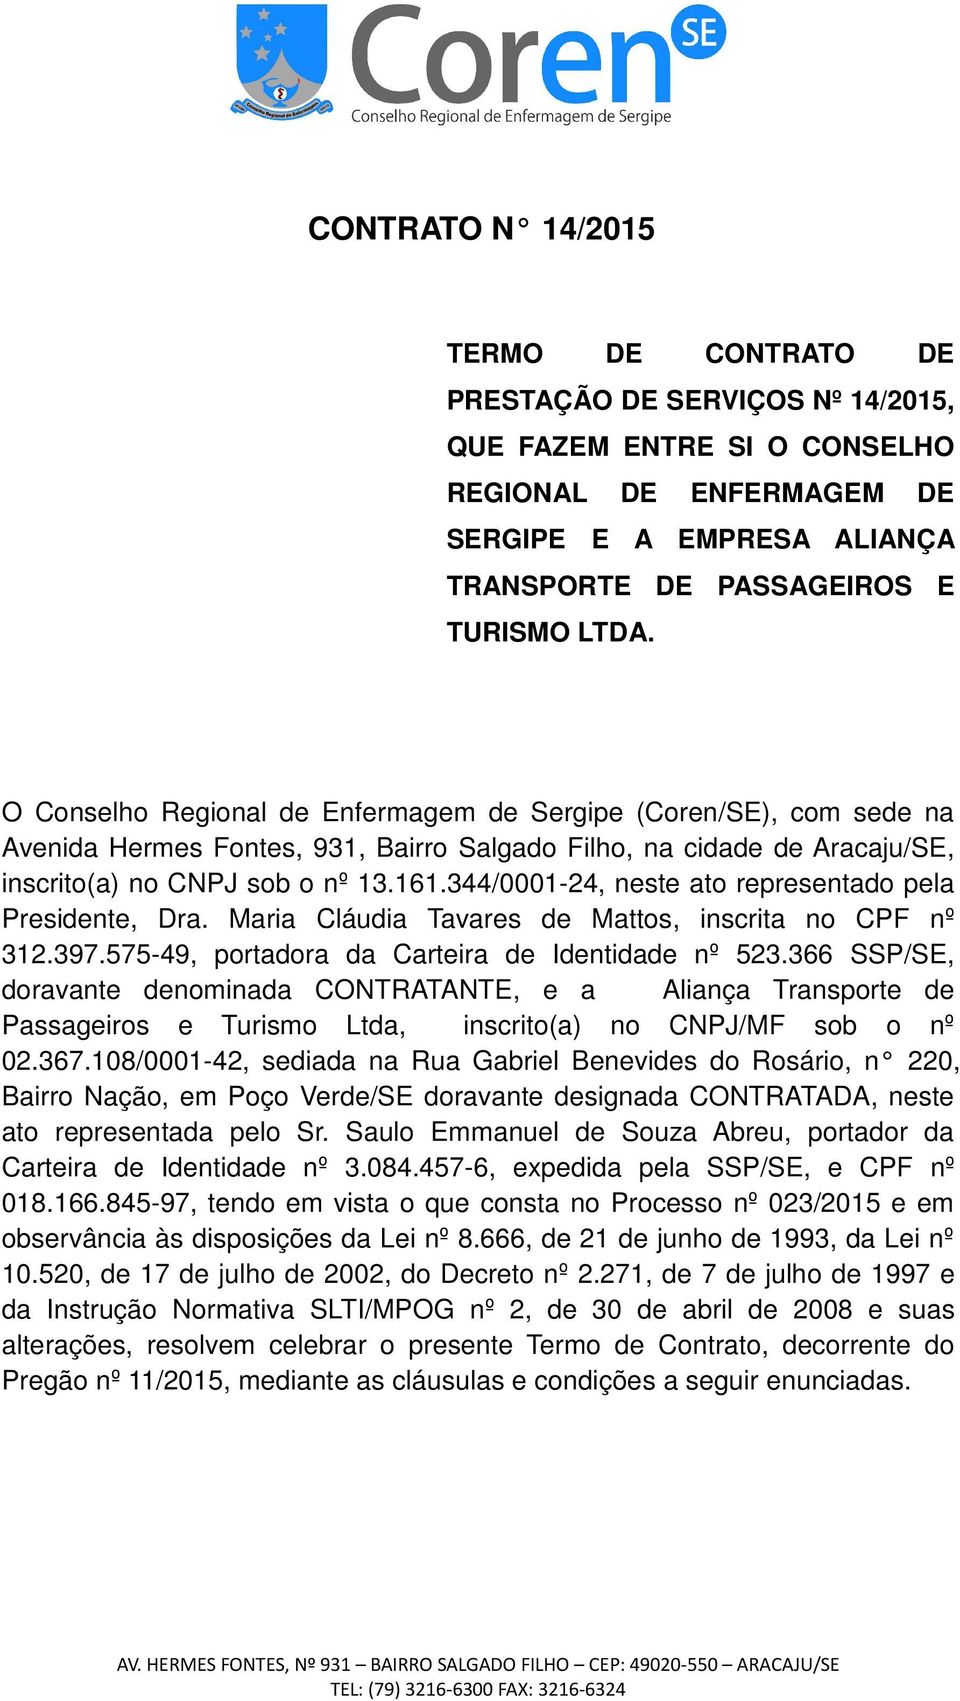 344/0001-24, neste ato representado pela Presidente, Dra. Maria Cláudia Tavares de Mattos, inscrita no CPF nº 312.397.575-49, portadora da Carteira de Identidade nº 523.